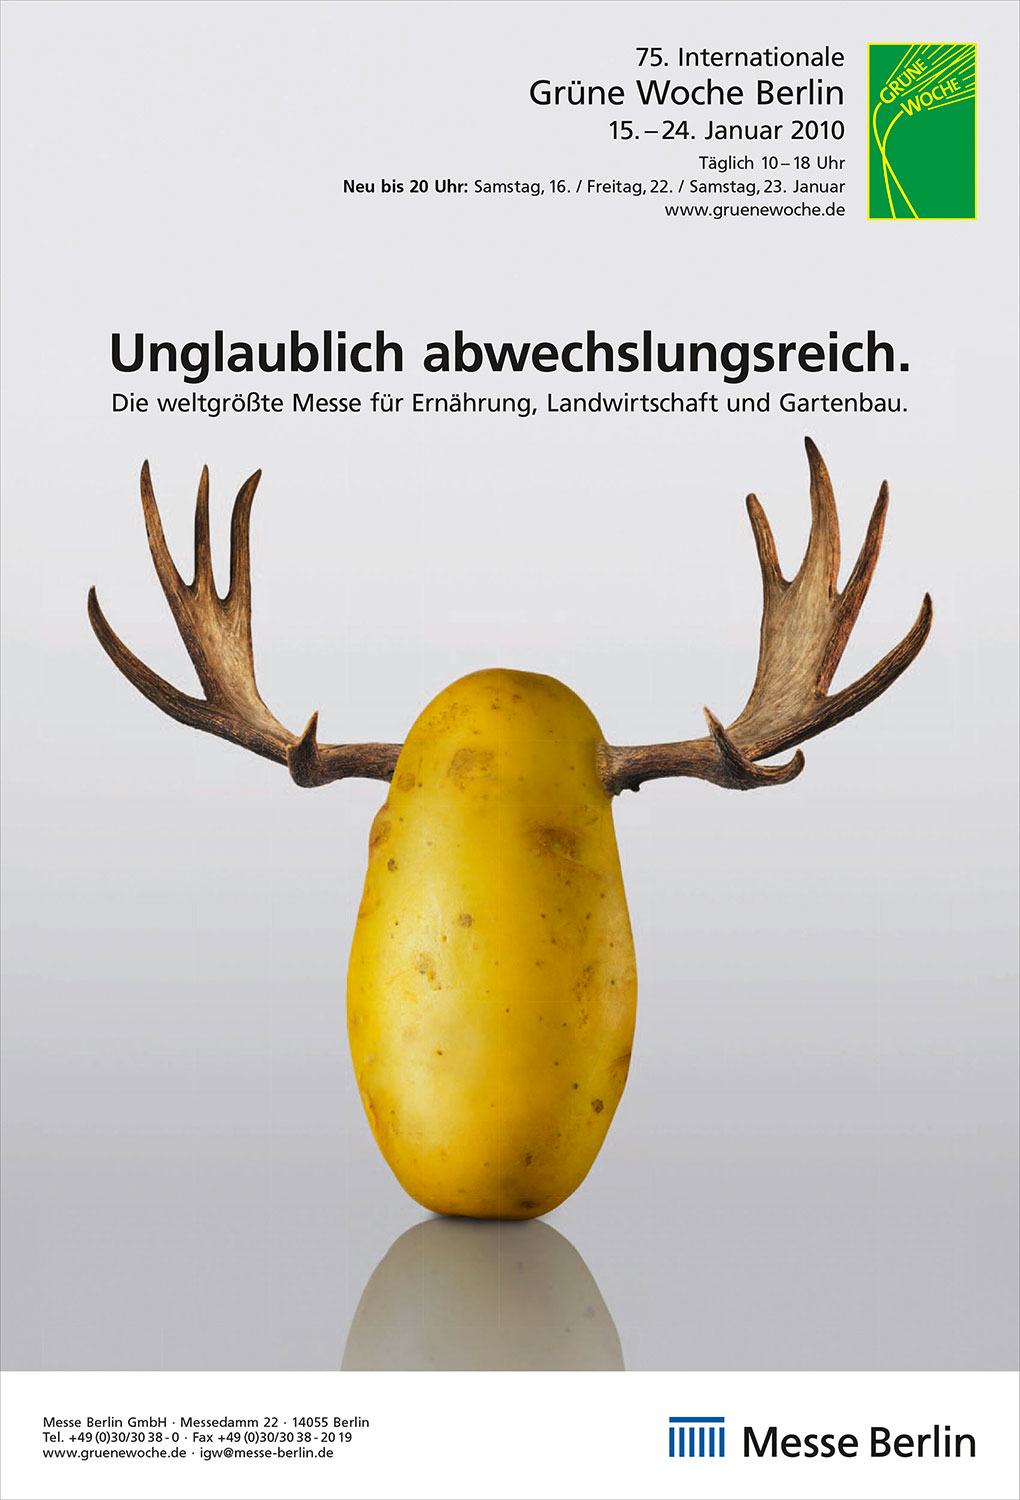 Advertising Photographie Still Life Composing Internationale Grüne Woche Messe Kartoffel Elch unglaublich abwechslungsreich Idris Kolodziej